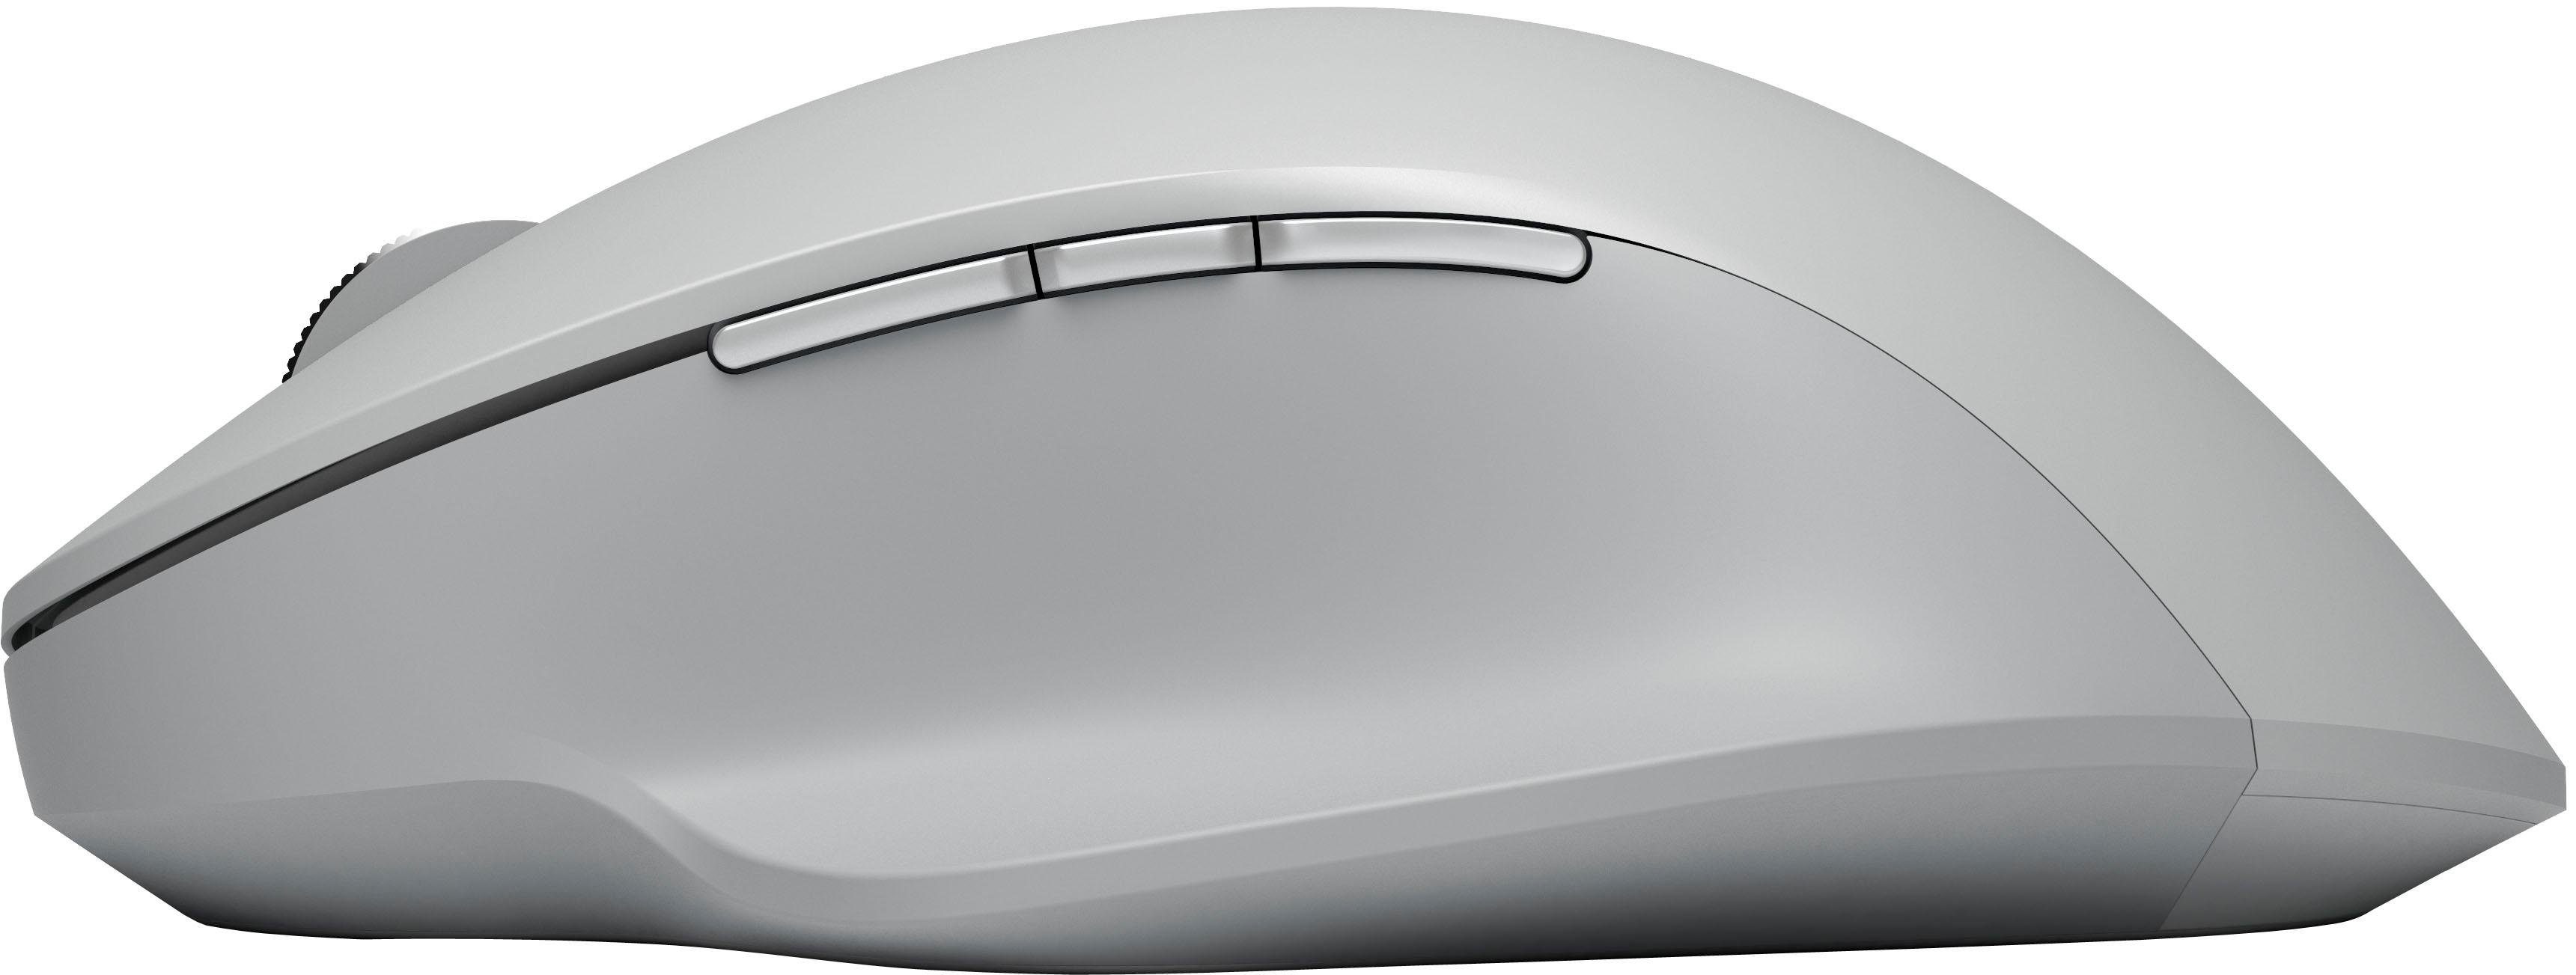 Maus (kabelgebunden) Surface Microsoft Precision